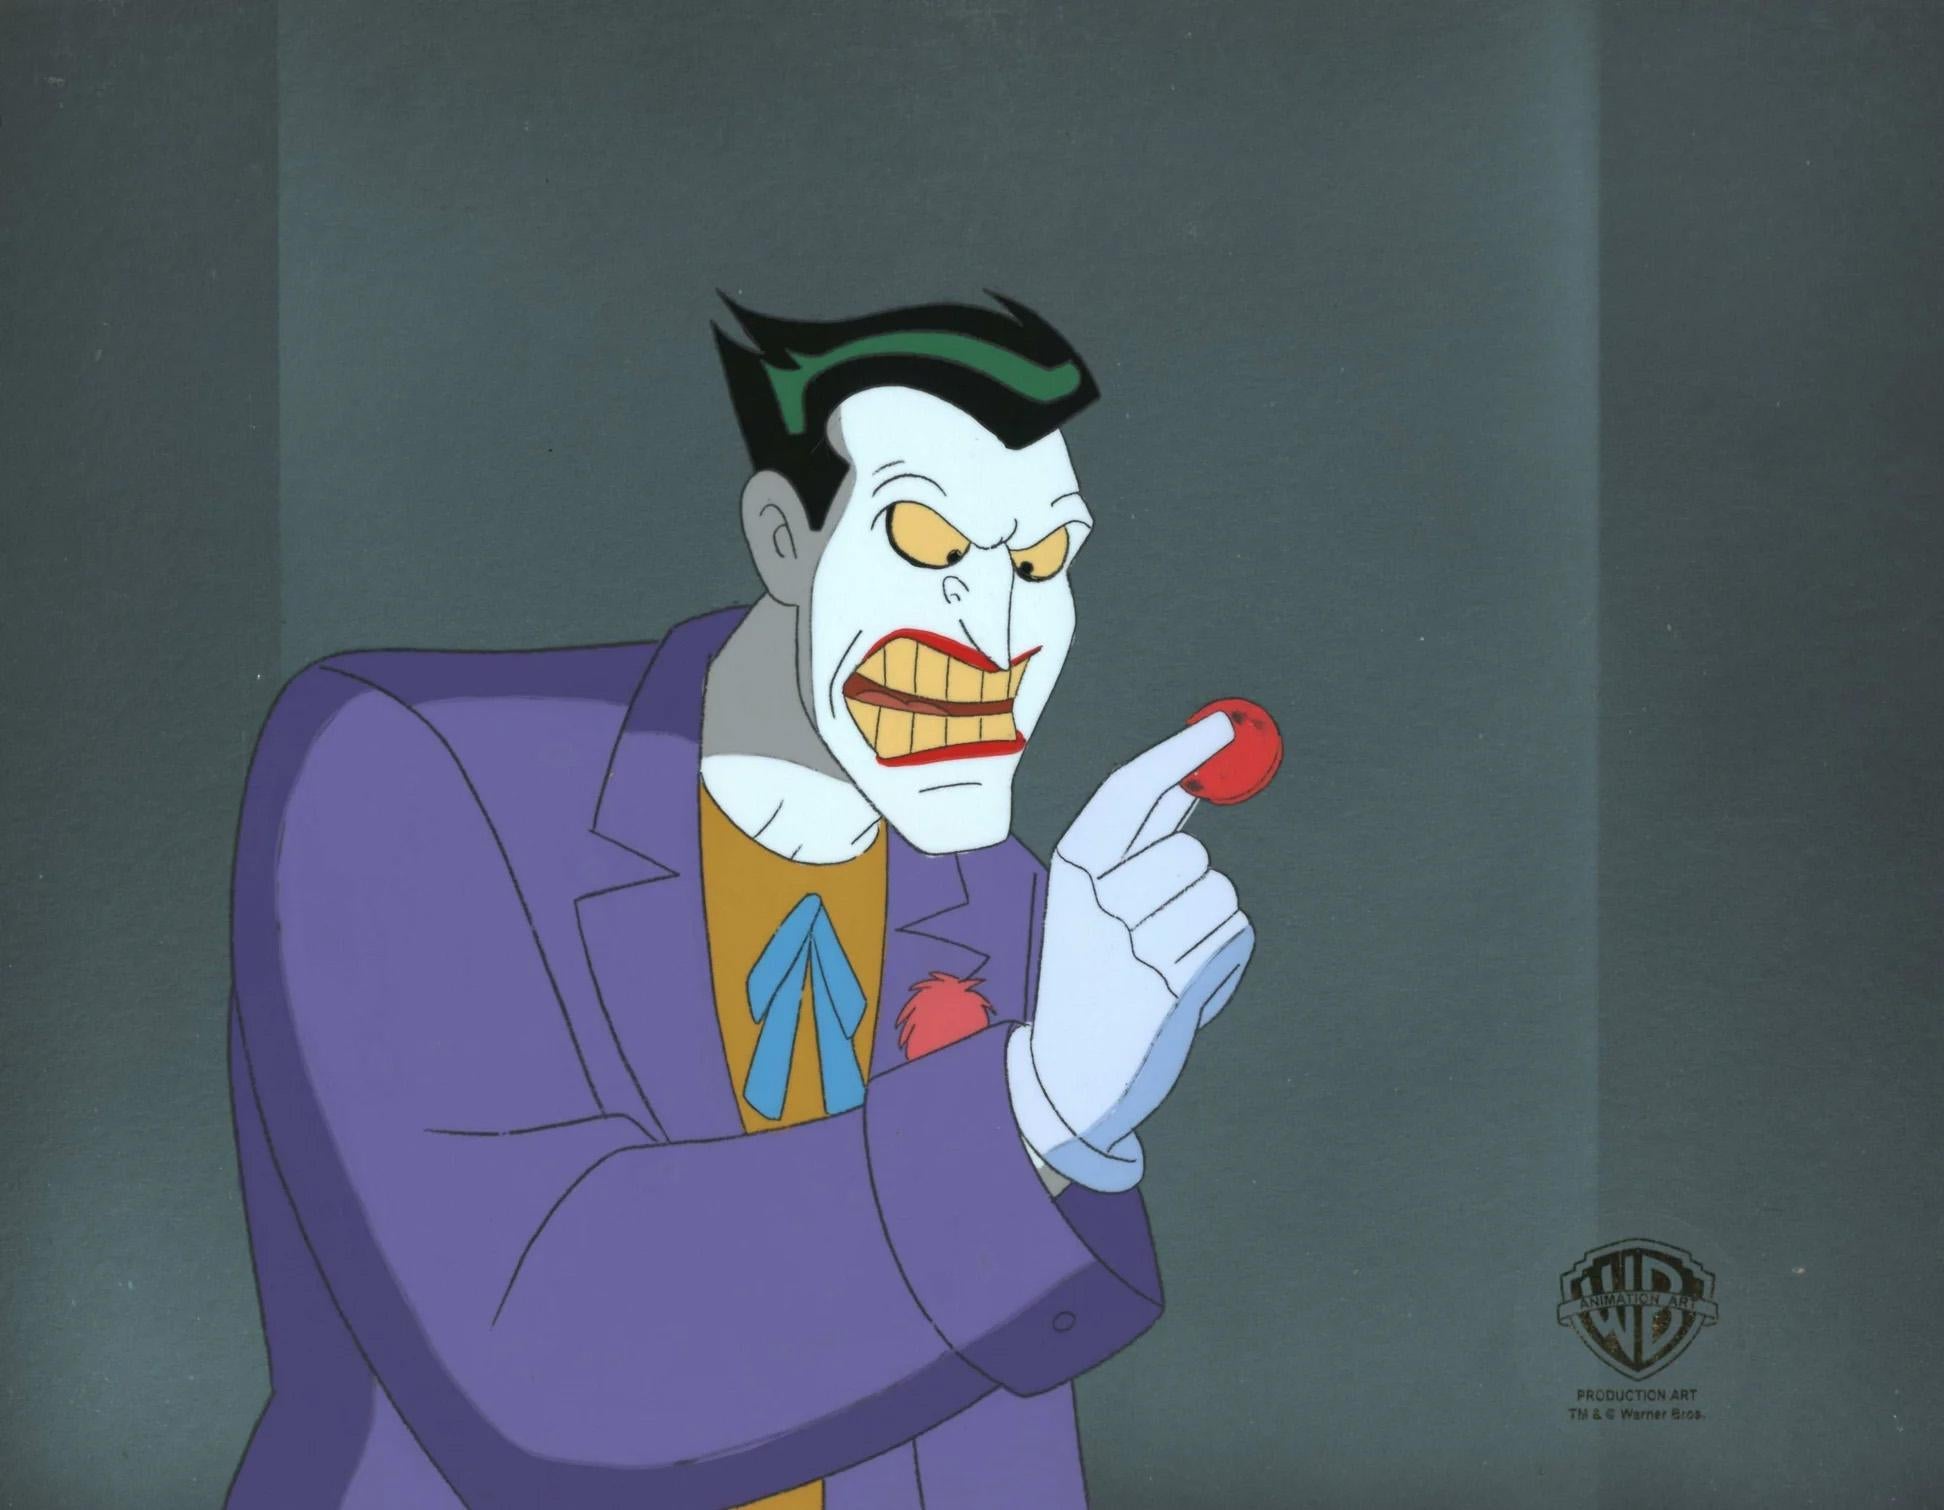 Batman The Animated Series Production Cel sur le fond d'origine : Joker